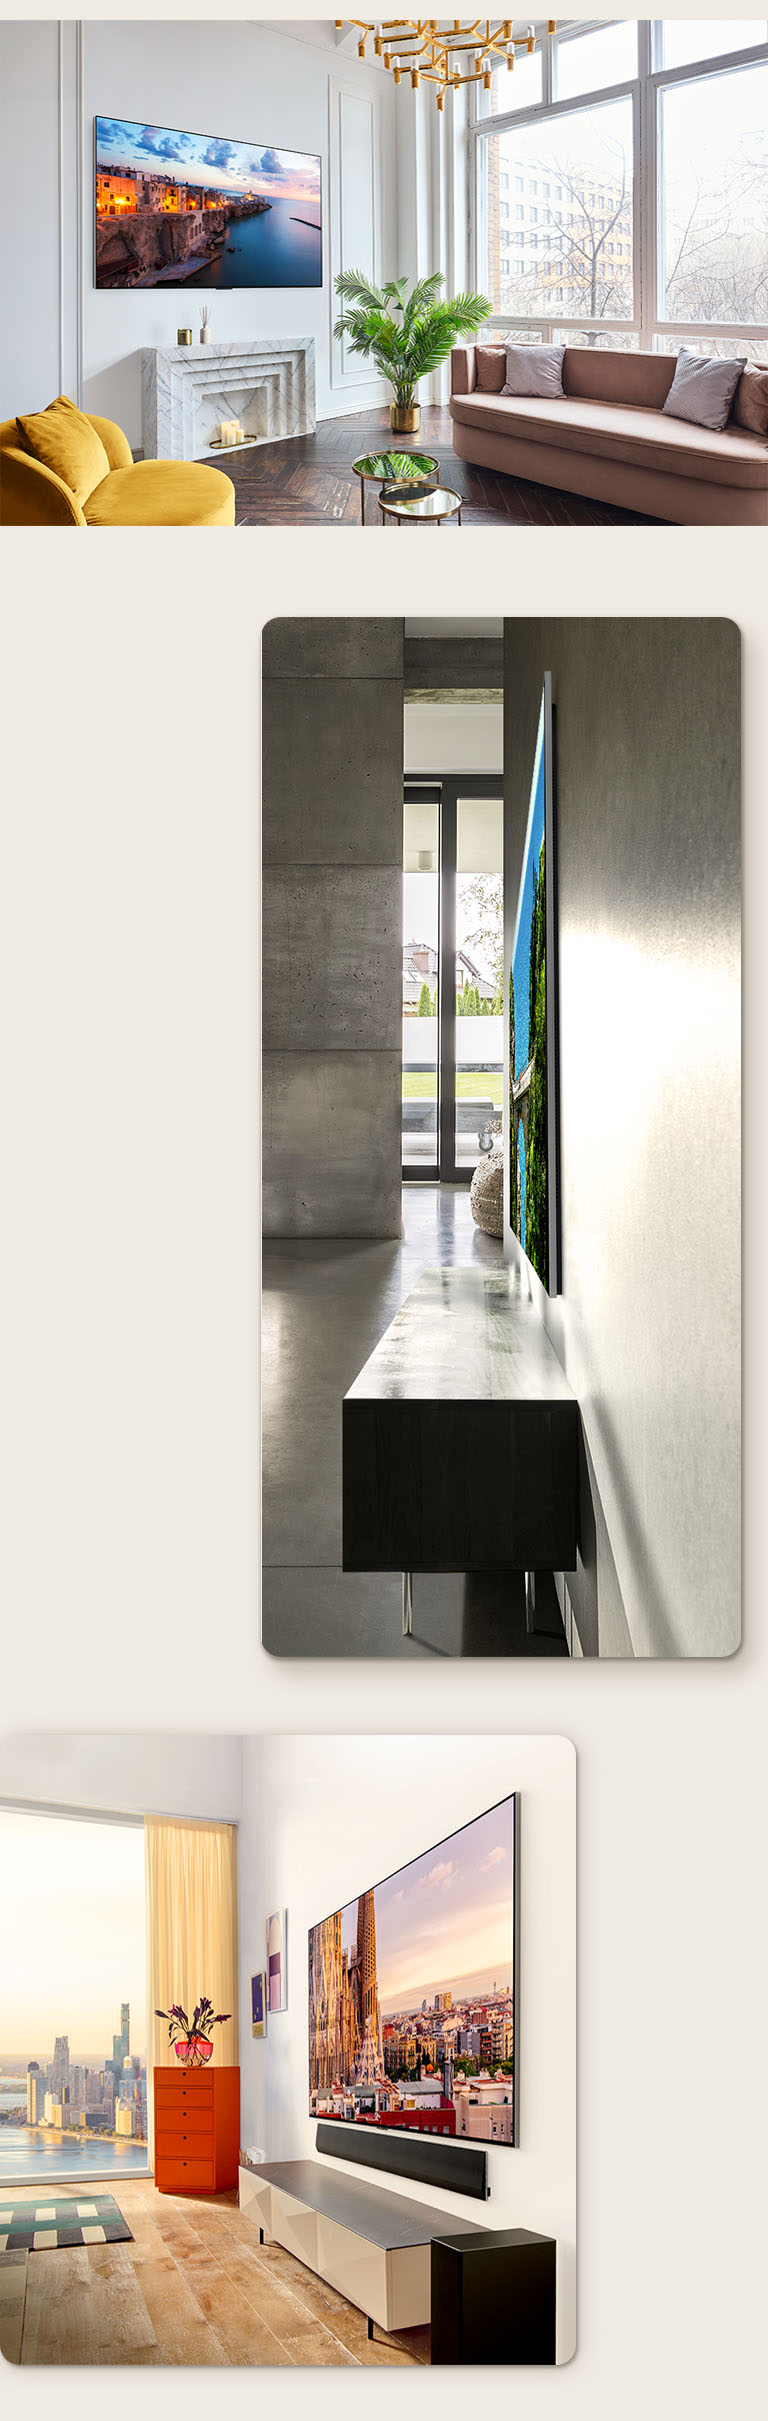 Una imagen de LG OLED G3 en la pared de una habitación ornamentada mostrando su One Wall Design. Una vista lateral de las dimensiones increíblemente delgadas de LG OLED G3. Una vista en ángulo de LG OLED G3 en la pared de un apartamento con vistas a la ciudad con una barra de sonido debajo.